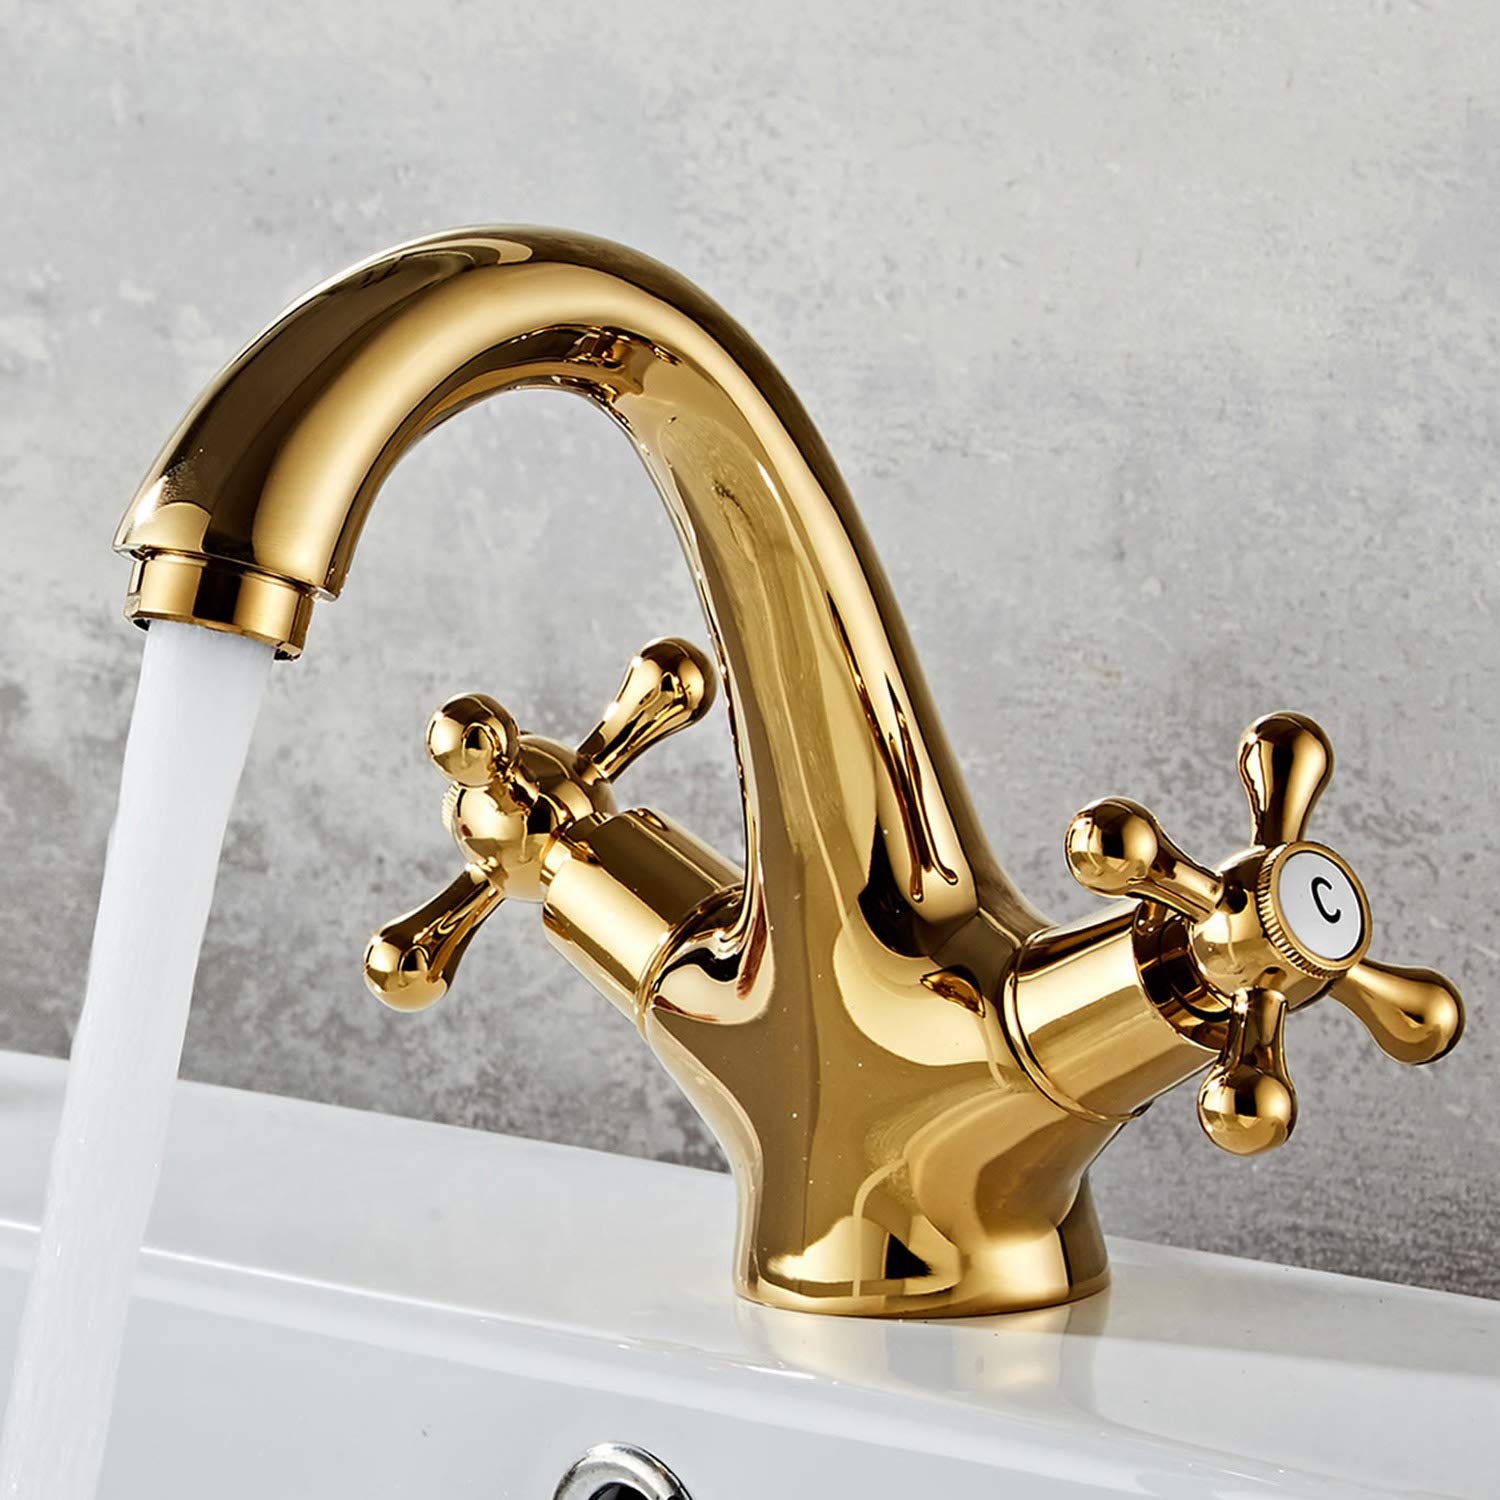 HomeLava Modern Waschtischarmatur Messing Wasserhahn Bad Gold Zweigriff Mischbatterie für Badezimmer Waschbecken mit Kreuzgriff